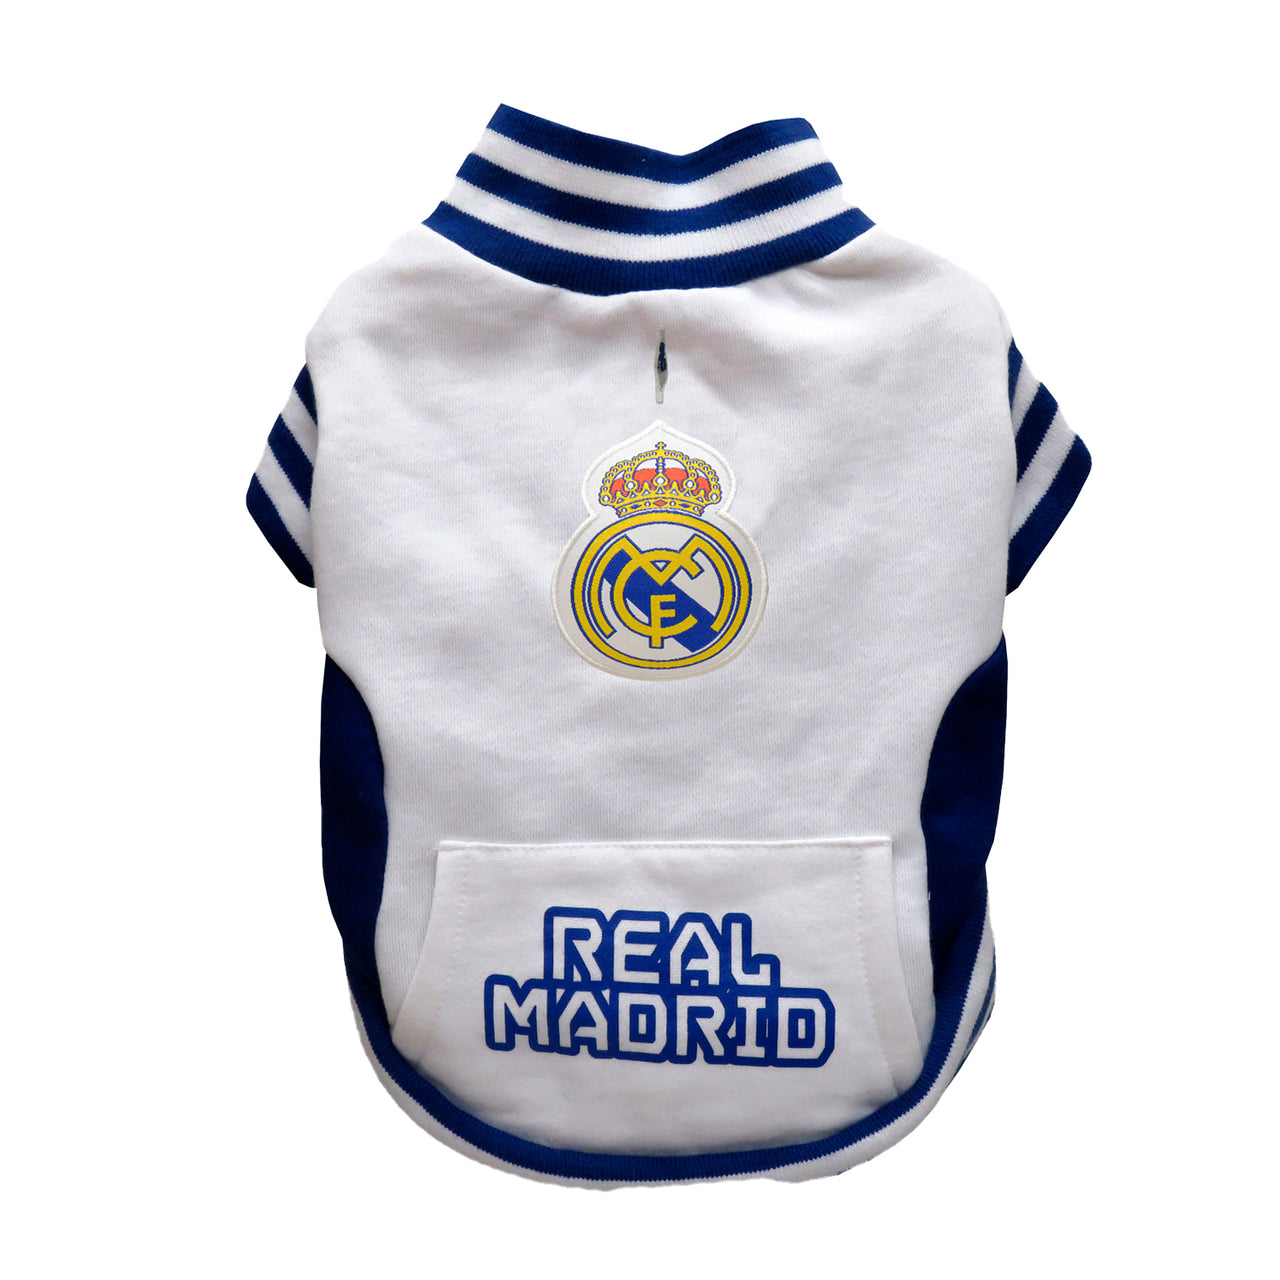 Accessories - Real Madrid : EU Shop